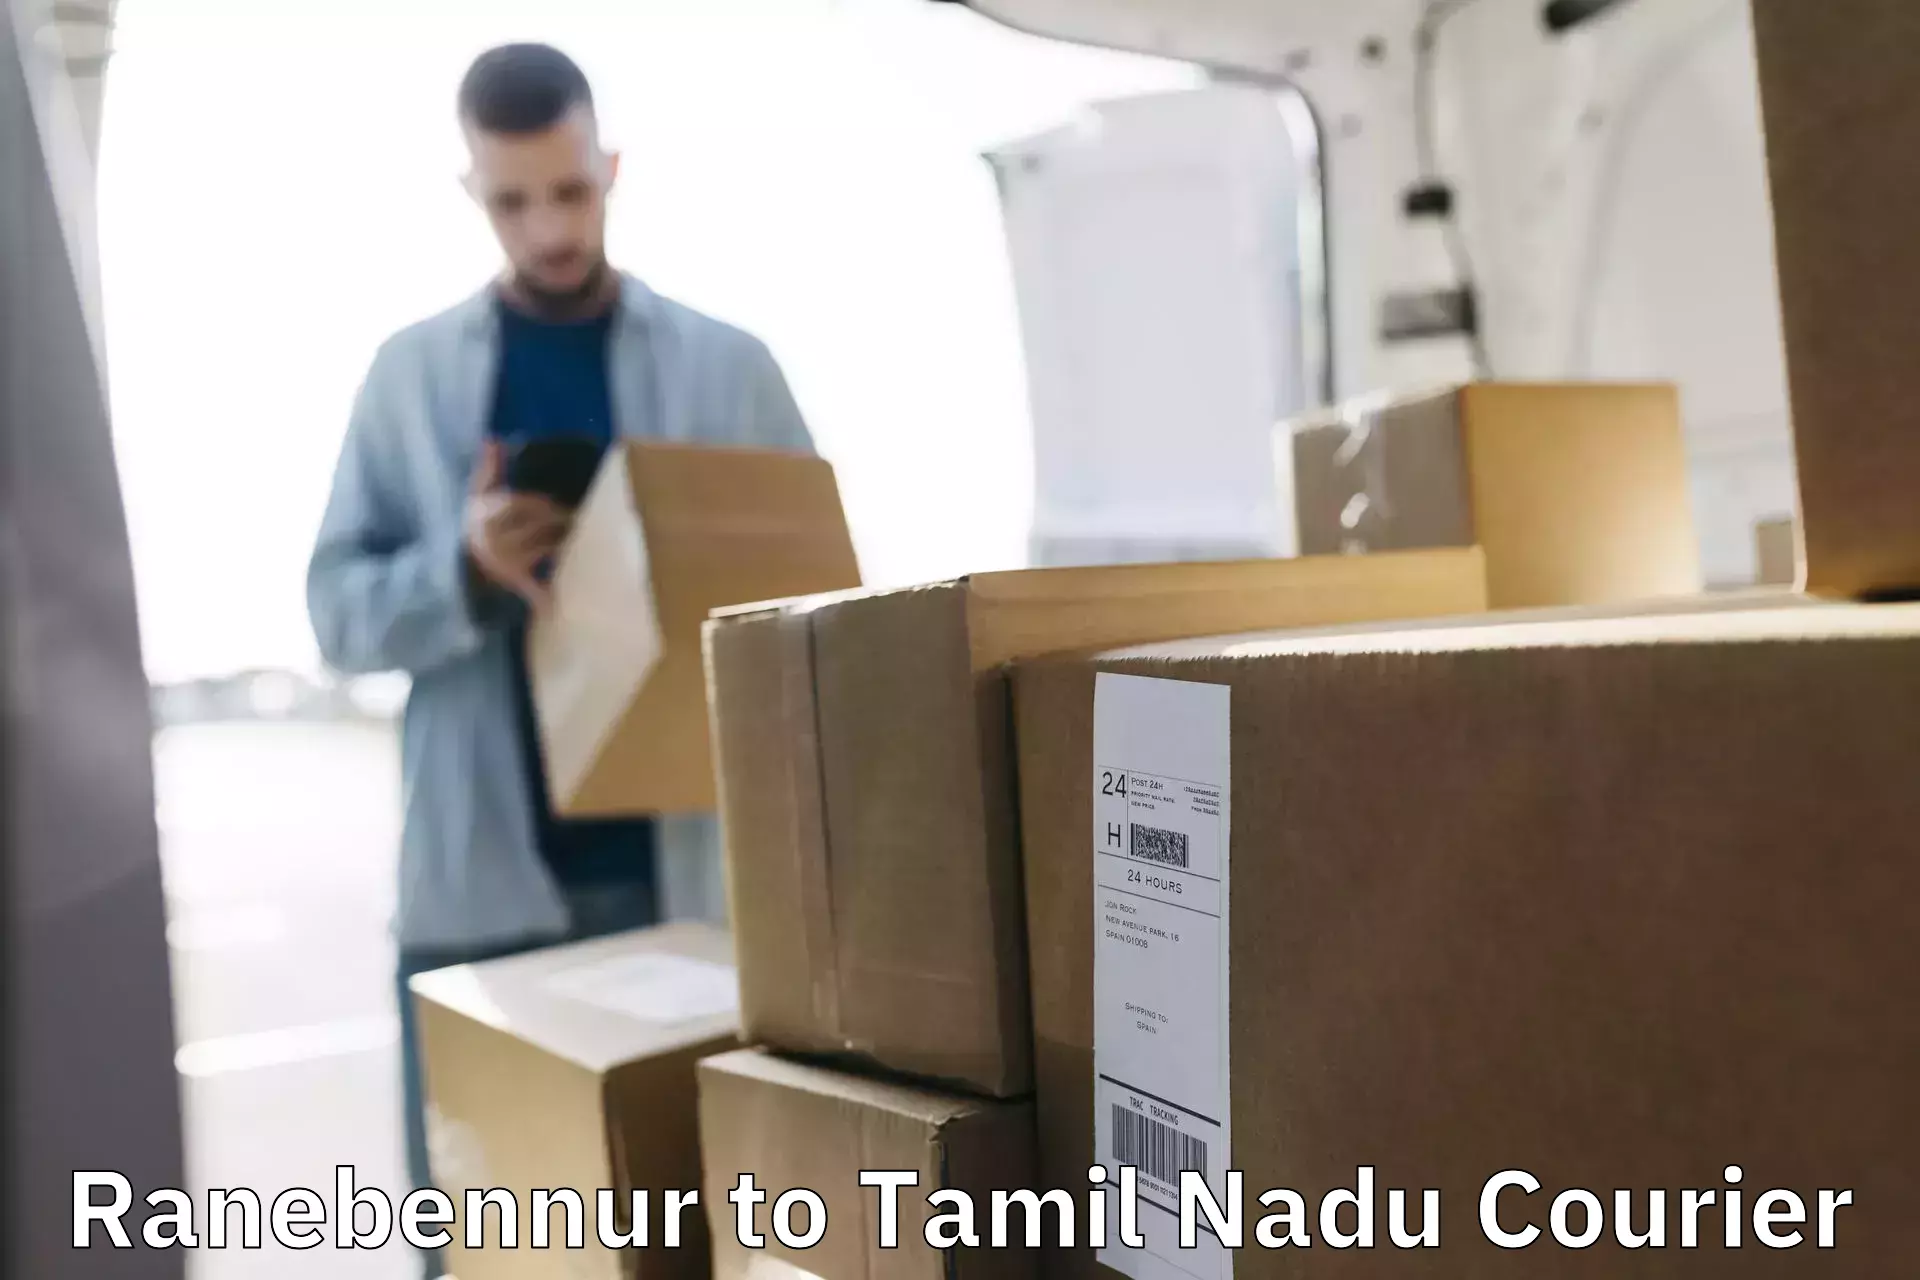 Nationwide delivery network Ranebennur to Perambur